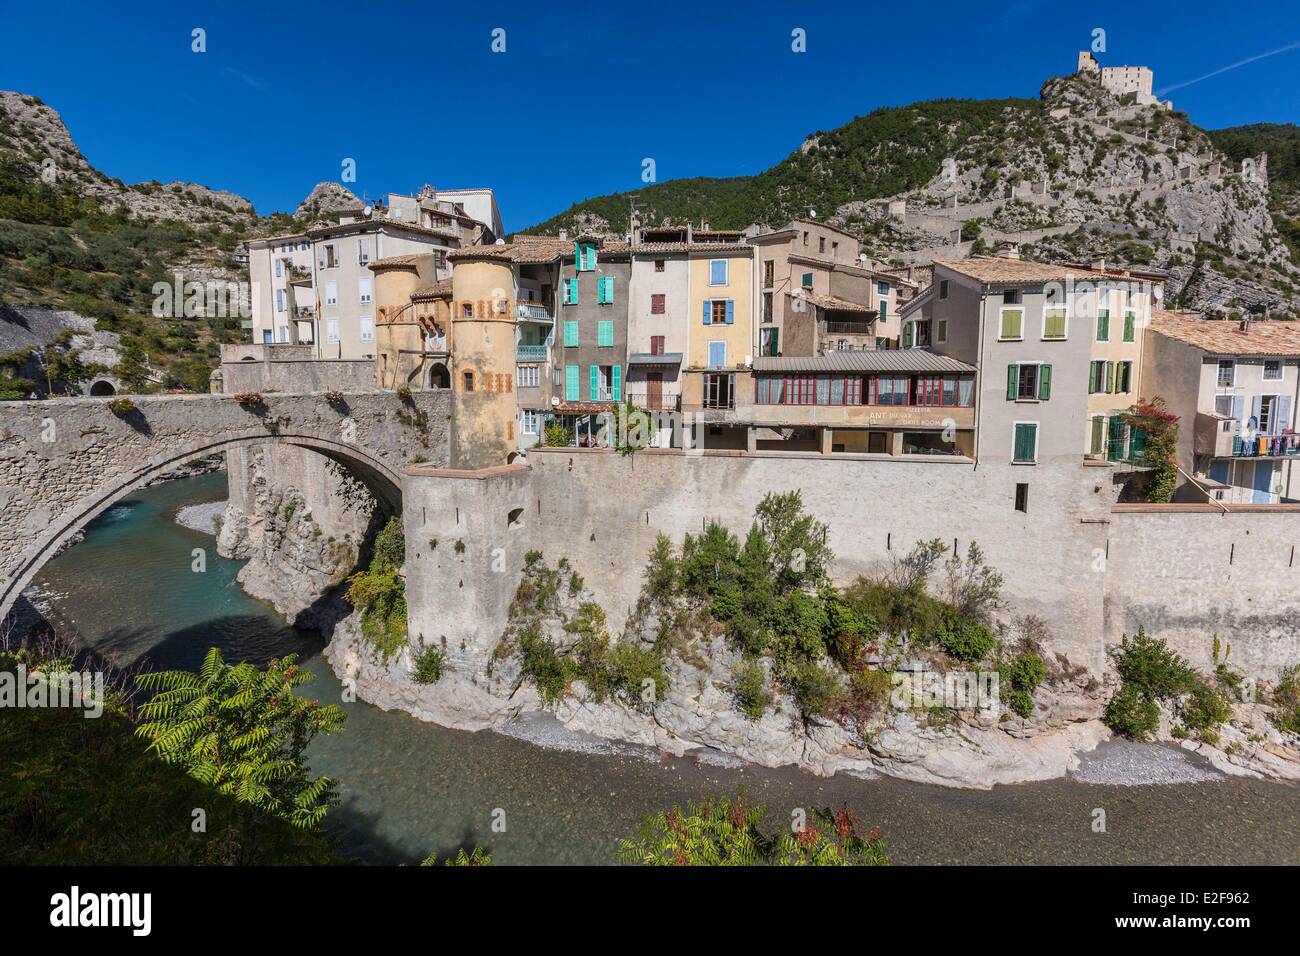 Francia, Alpes de Haute Provence, Entrevaux ciudad medieval fortificada por Vauban Foto de stock